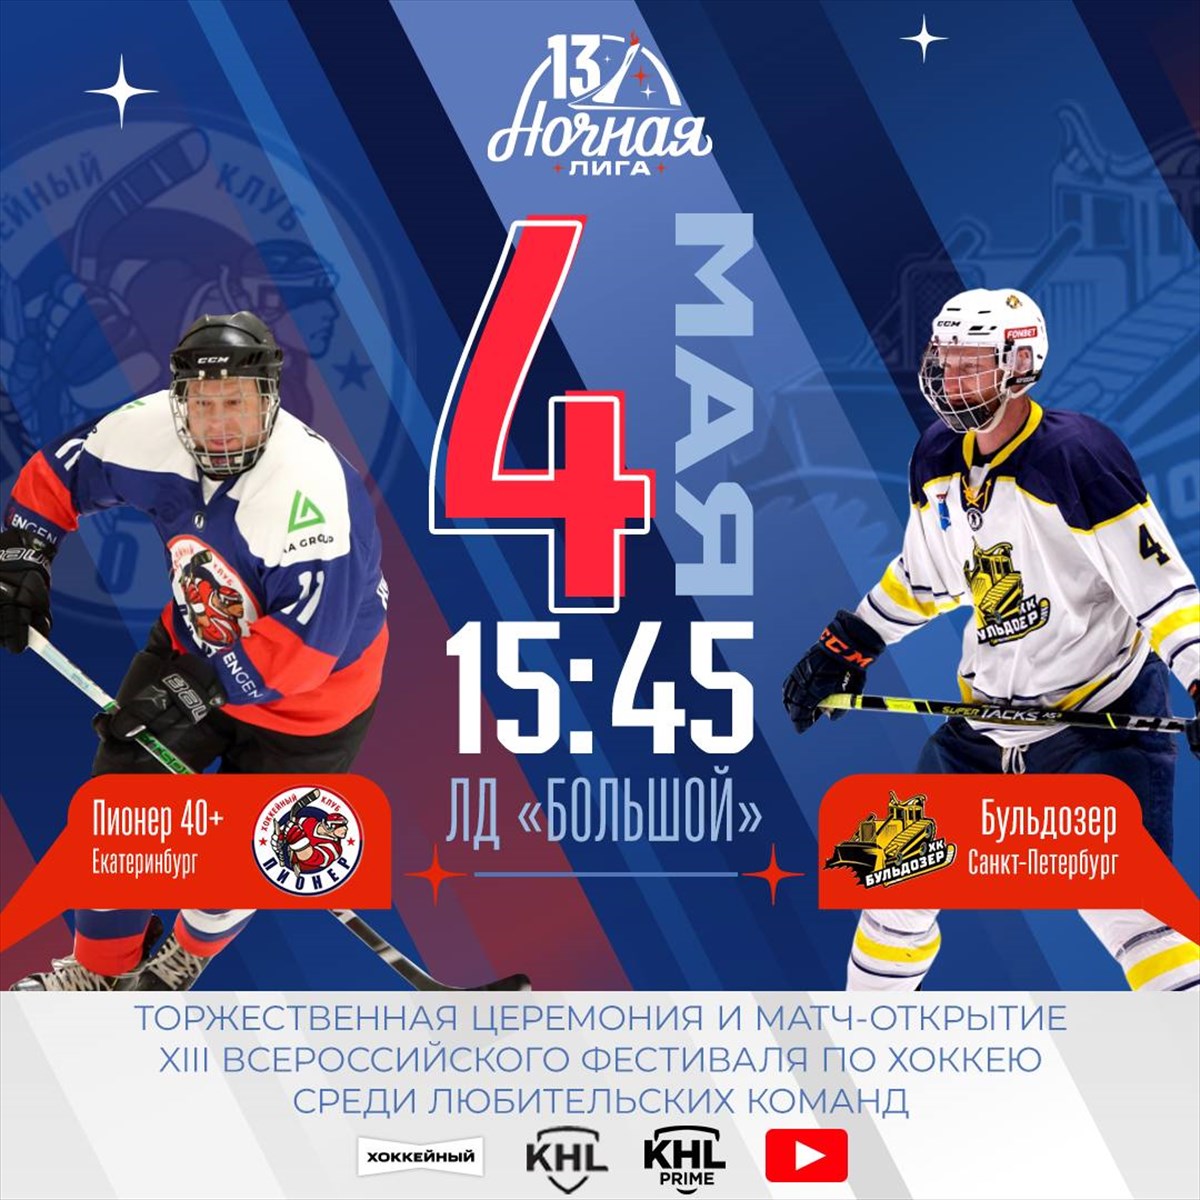 ХК «Бульдозер» сыграют в матче открытия XIII Всероссийского фестиваля по хоккею среди любительских команд 